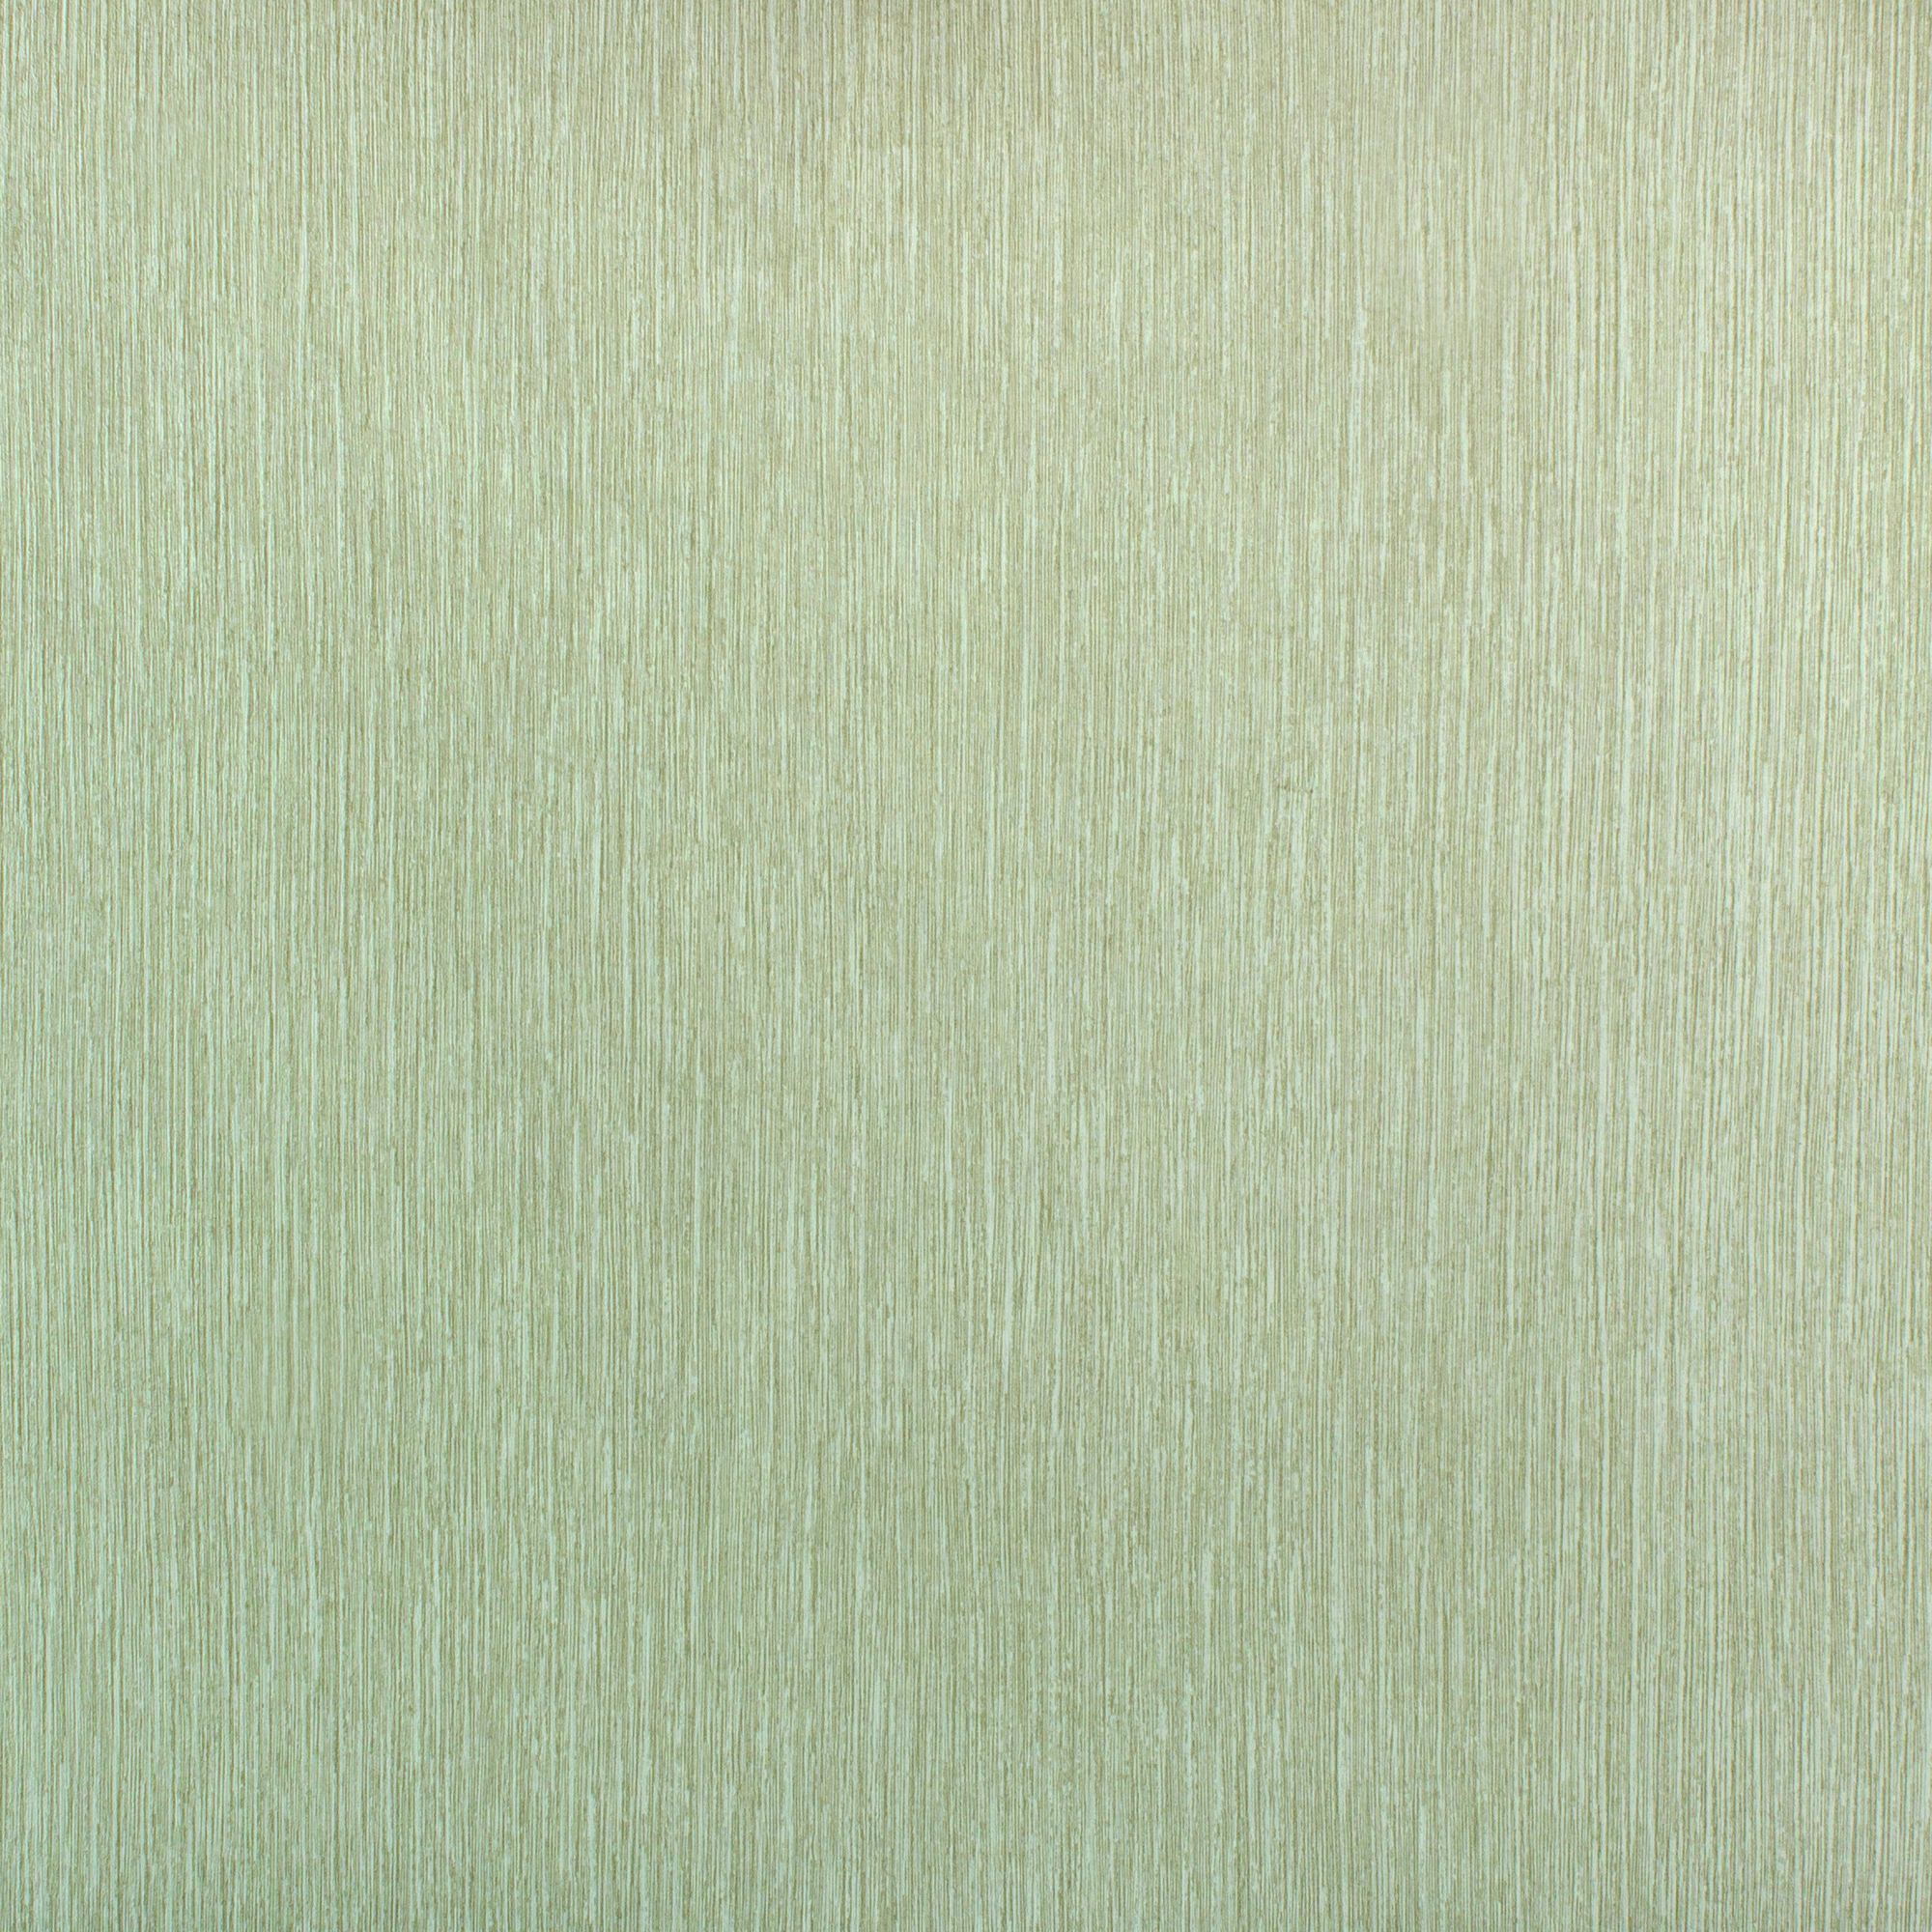 Обои флизелиновые Elysium шпалеры серые 1.06 м е67009